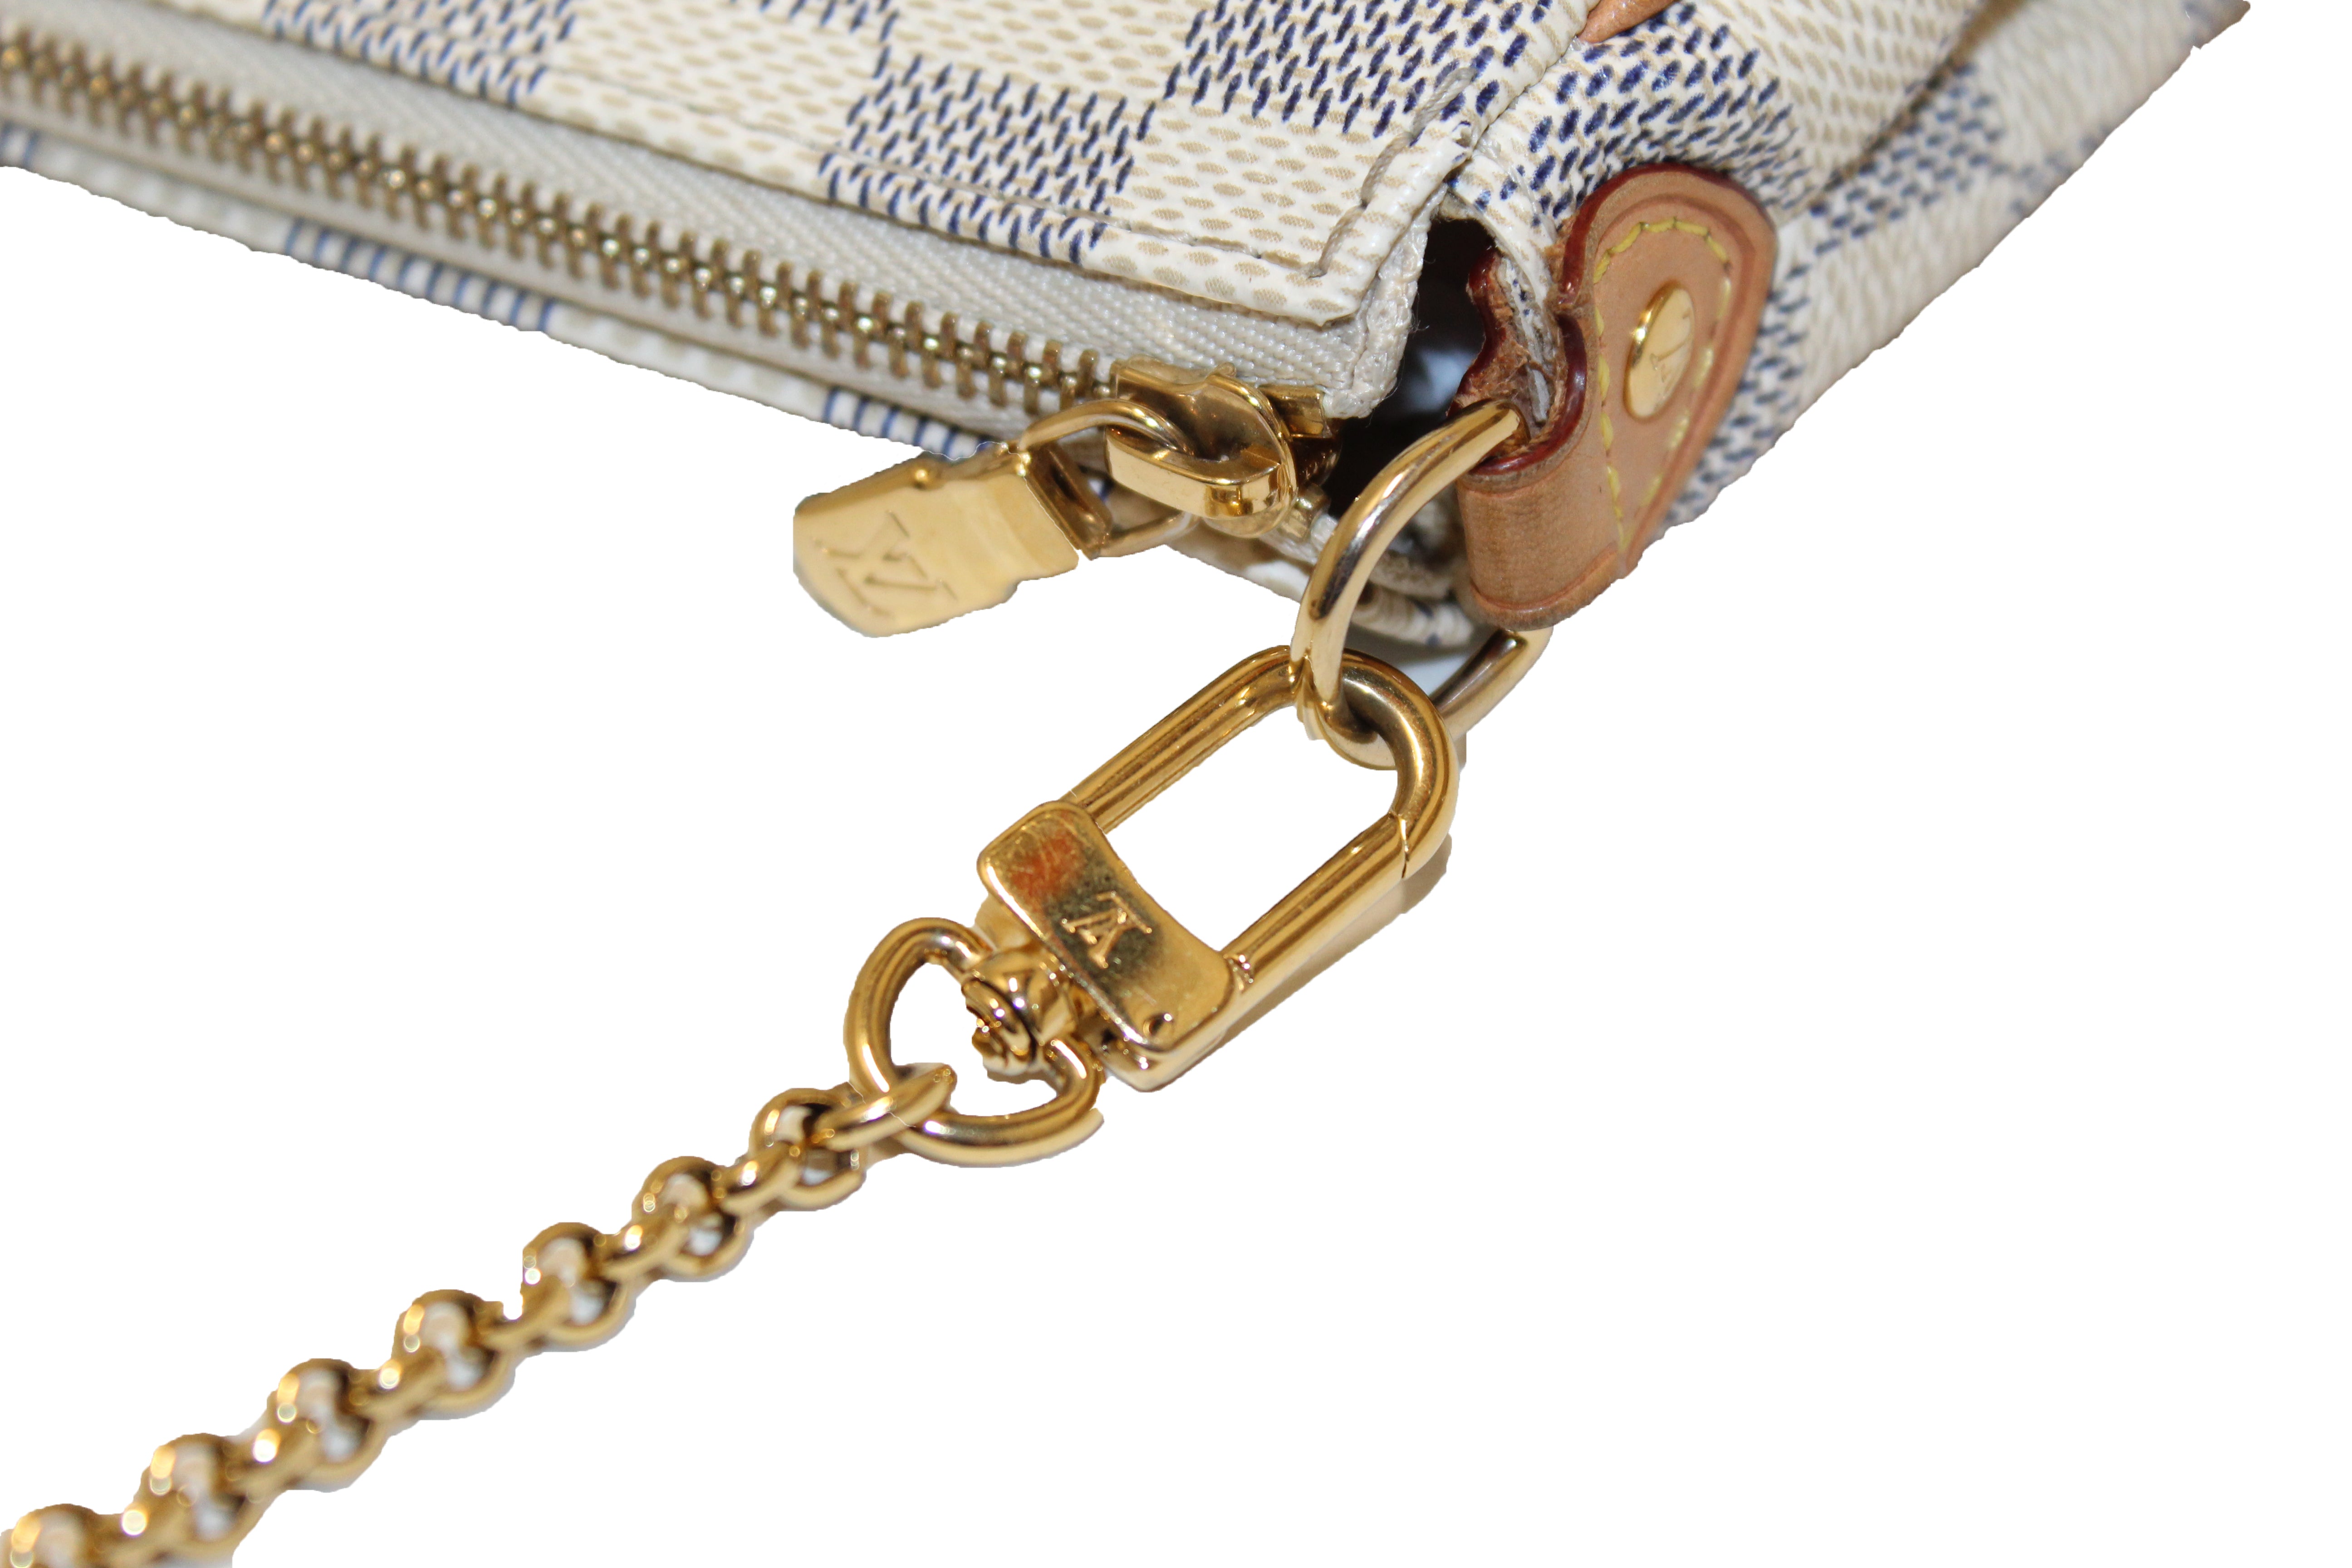 Authentic Louis Vuitton Damier Azur Canvas Eva Clutch Messenger Bag